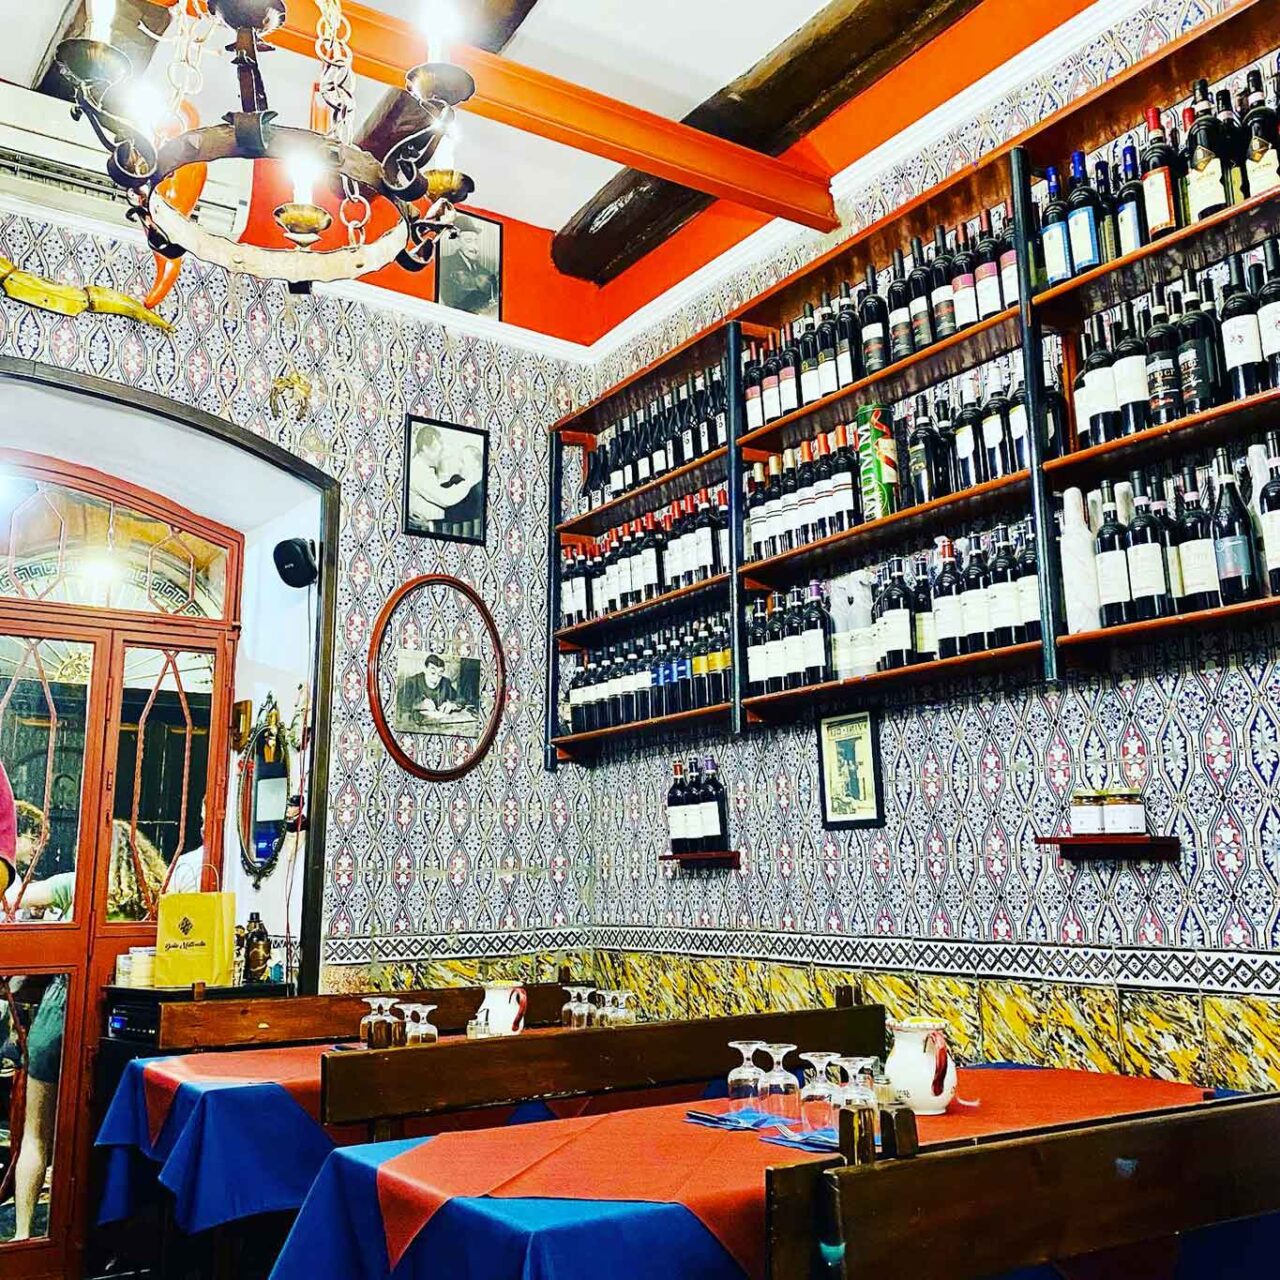 Migliori ristoranti Napoli osteria della Mattonella